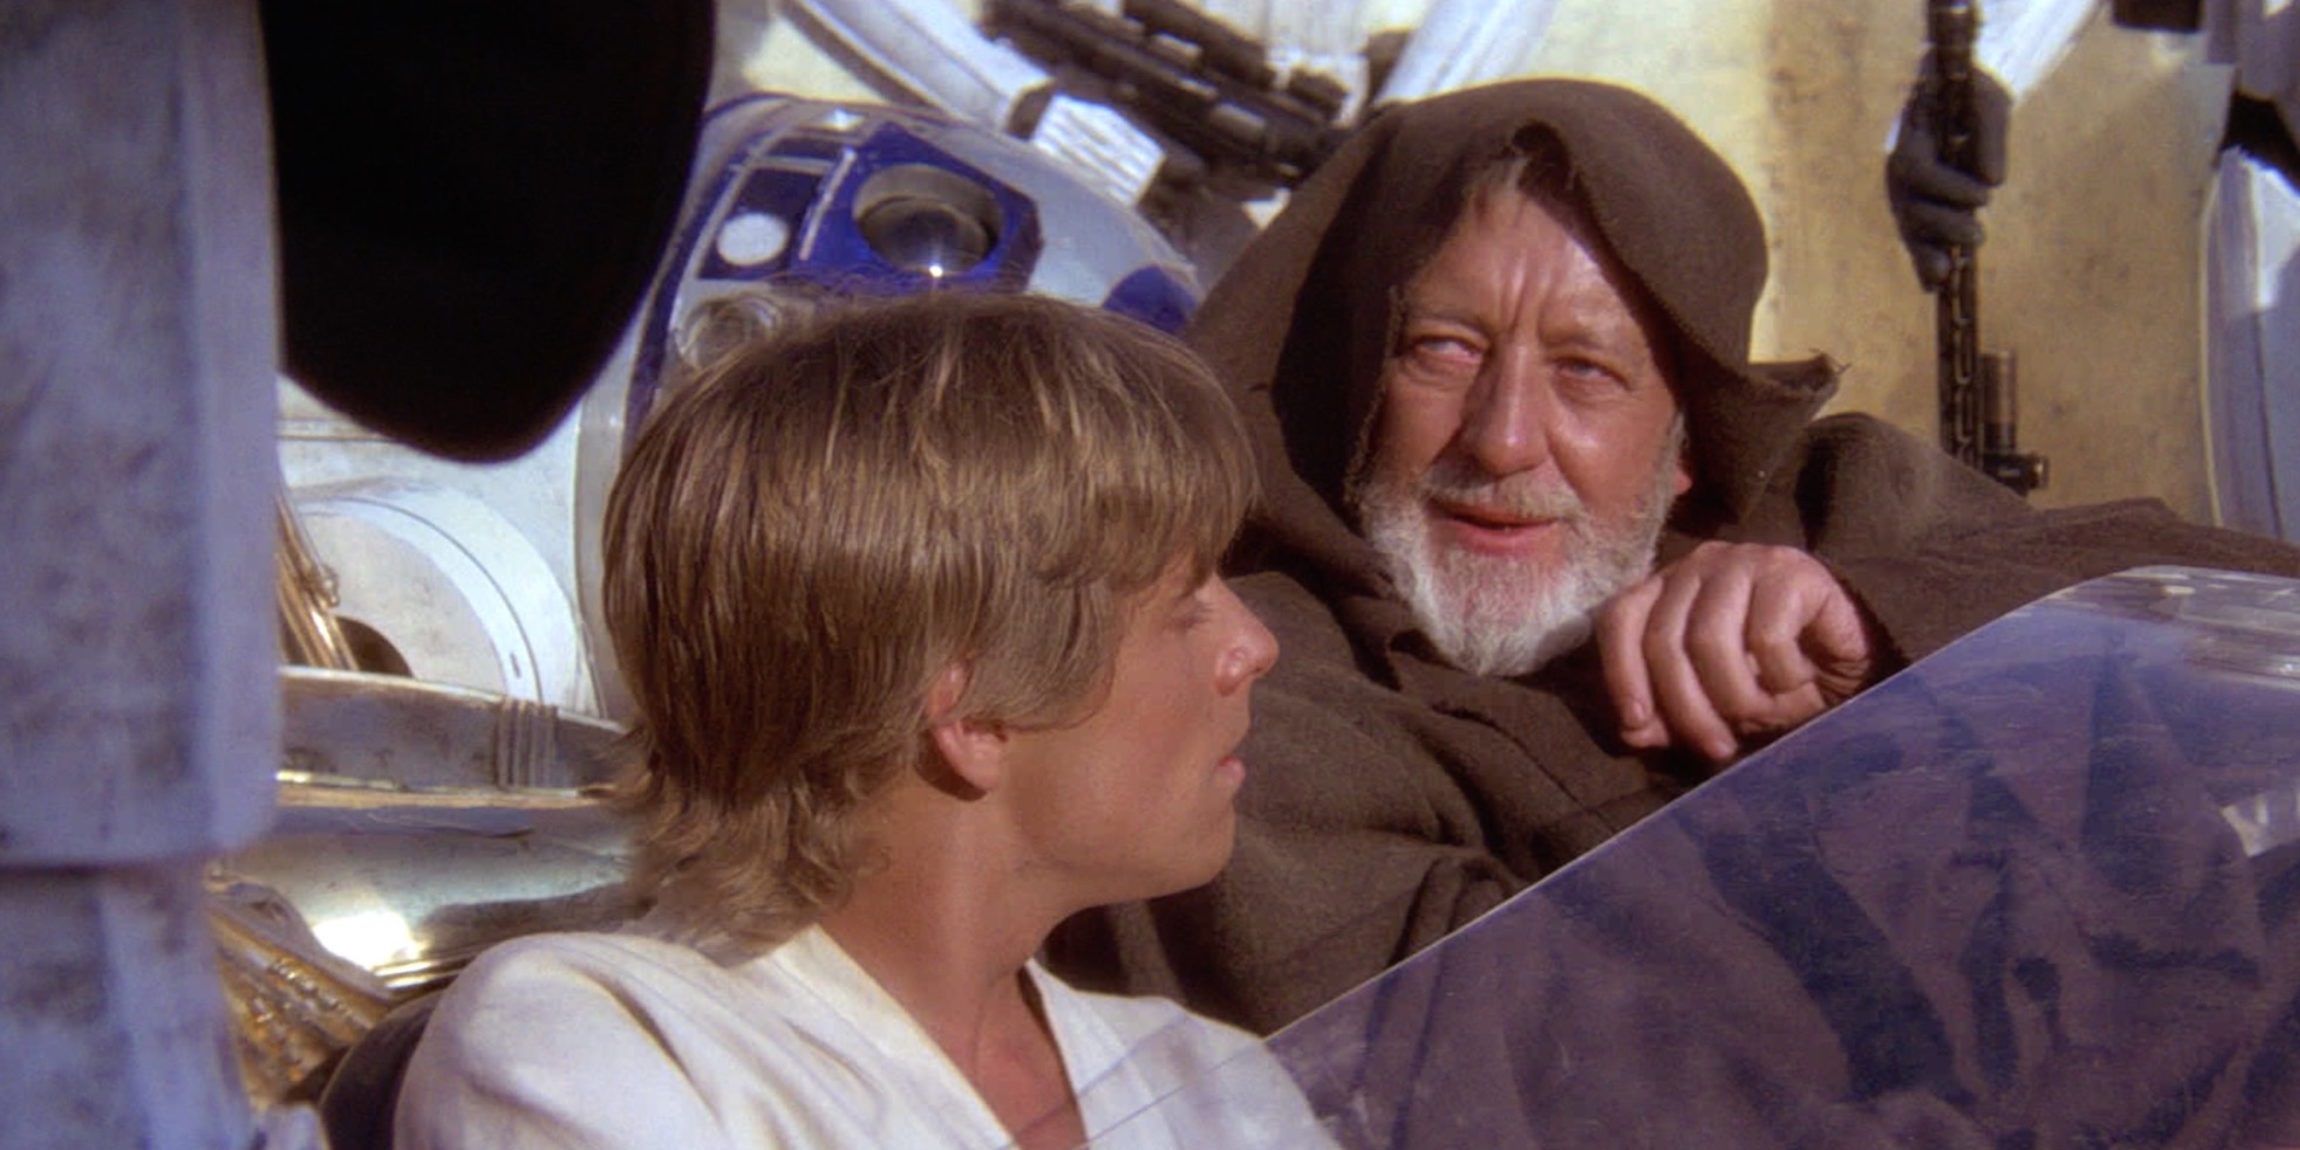 Obi-Wan uses the Jedi mind trick in Star Wars